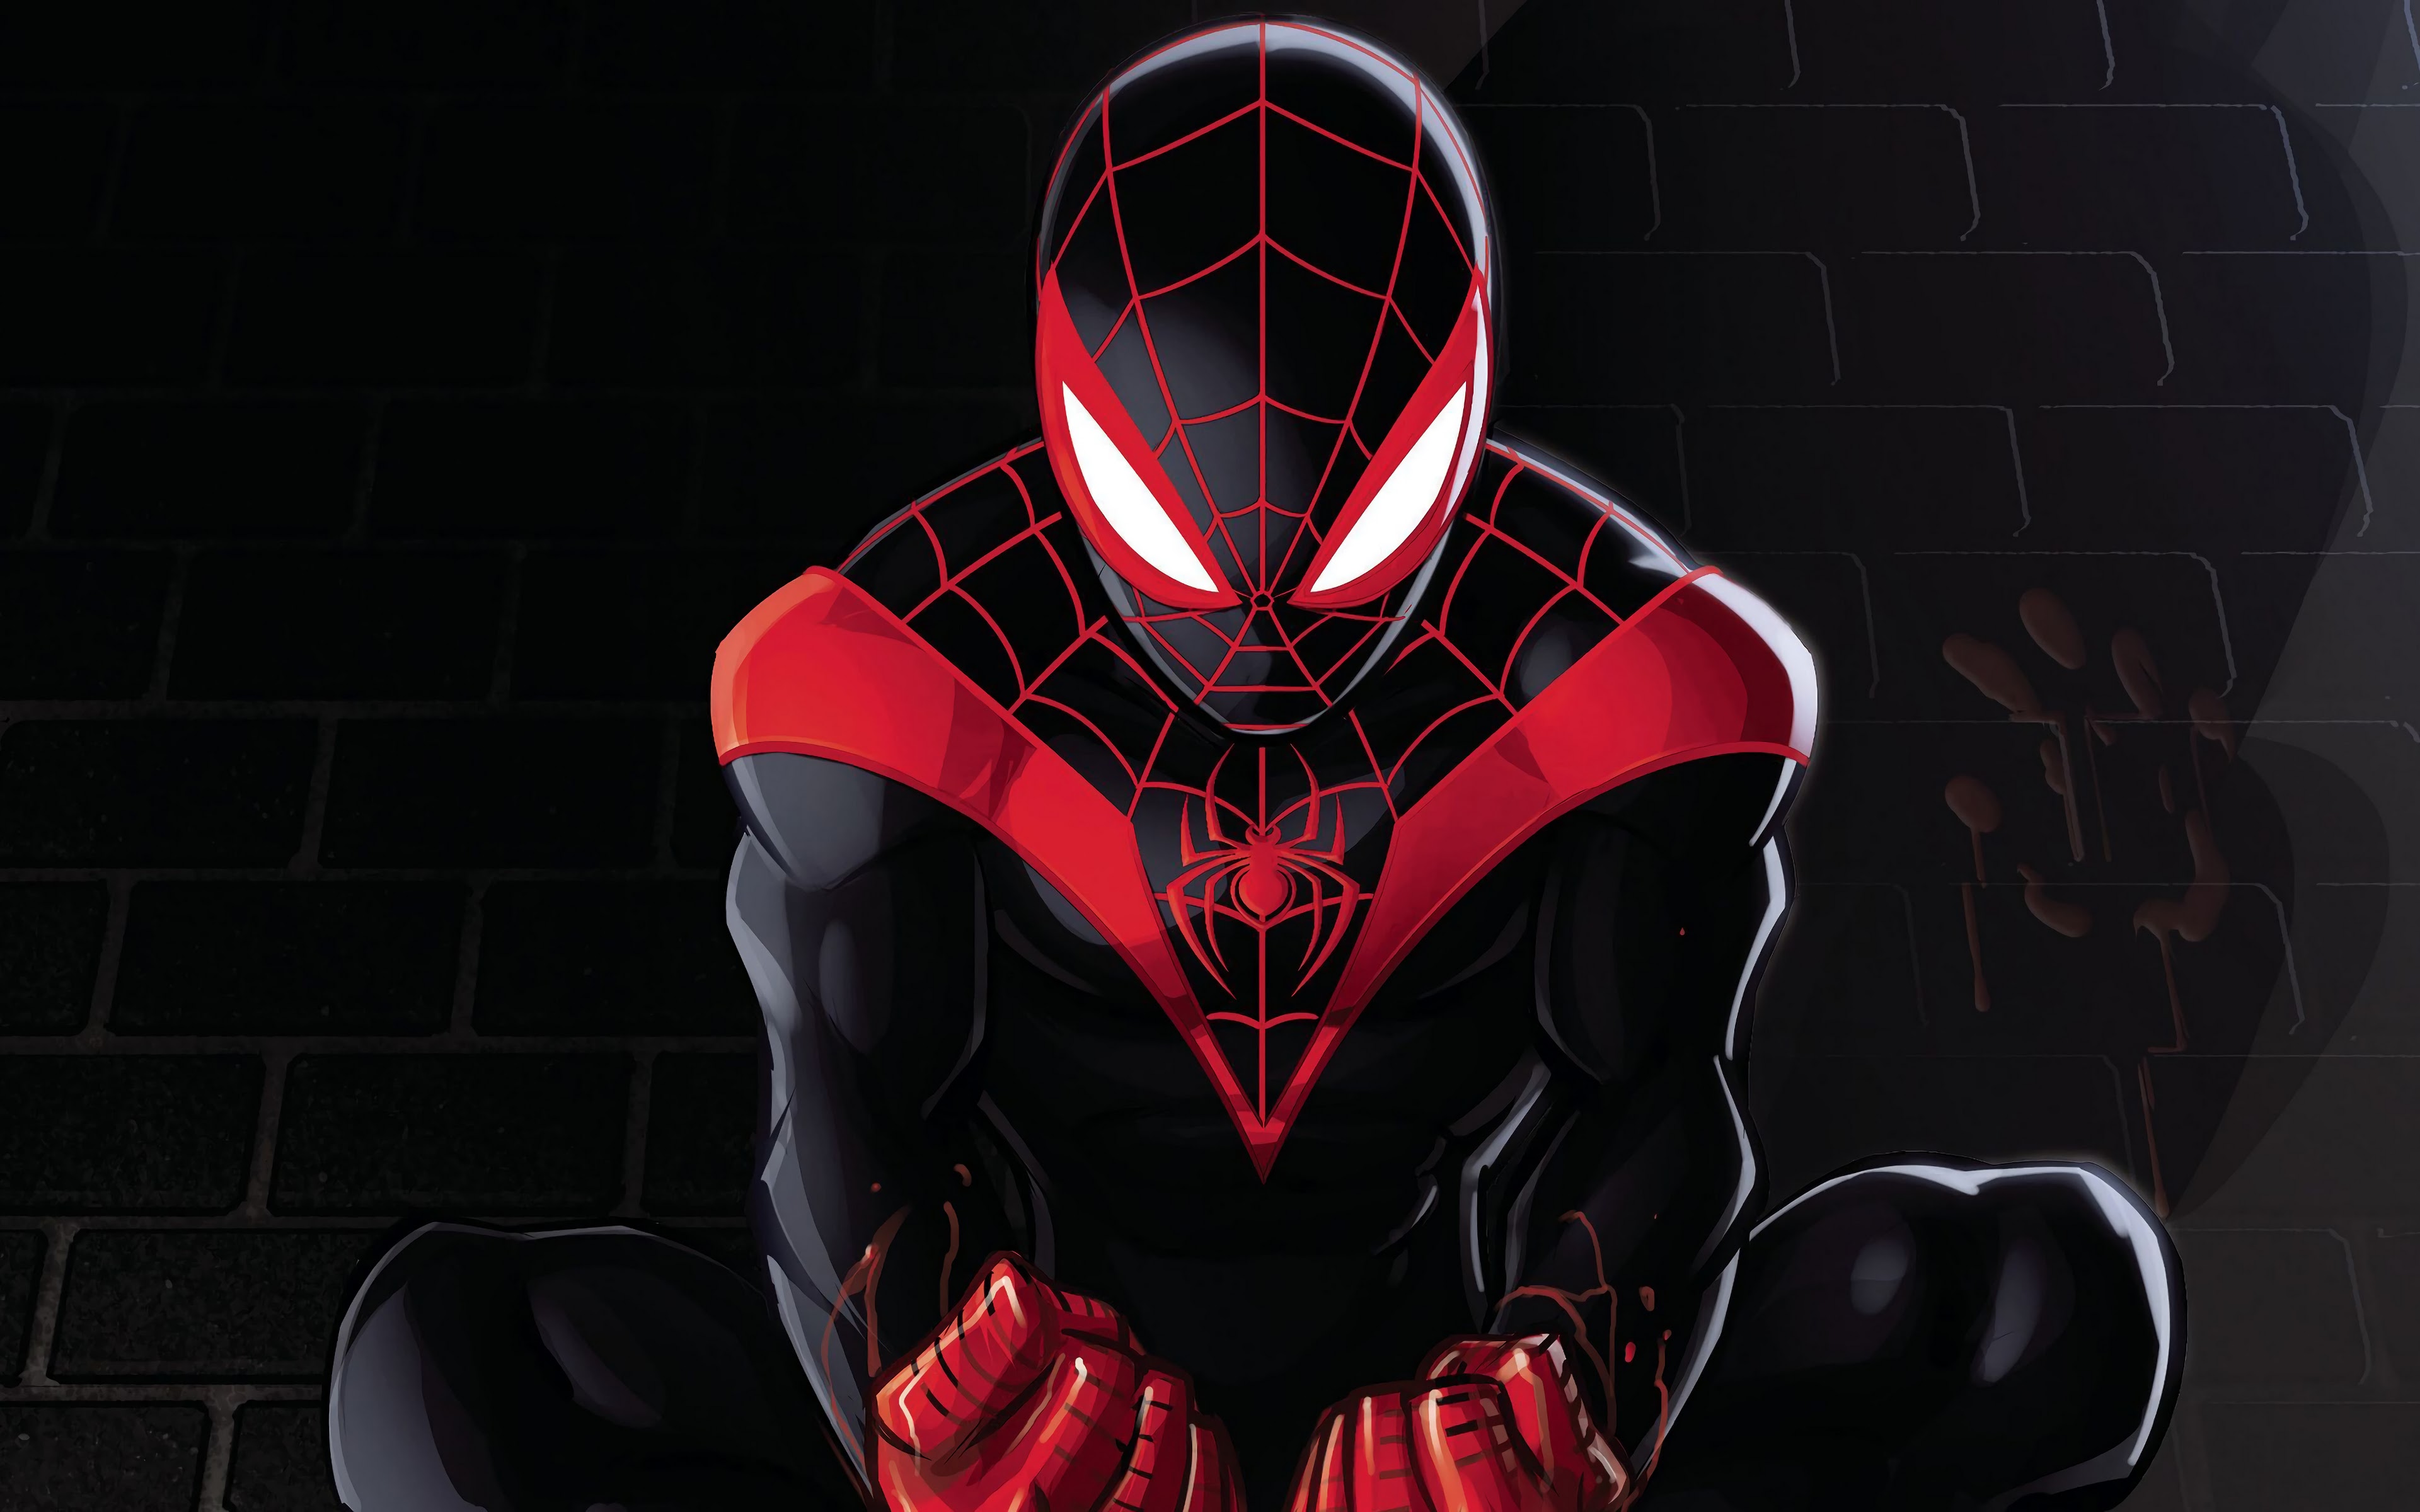 Спайдер майлз моралес. Marvel's человек-паук: Майлз Моралес. Черный человек паук Майлз Моралес. Человек паук черный с красным Майлз Моралес. Спайдер Марвел Майлз Моралес.